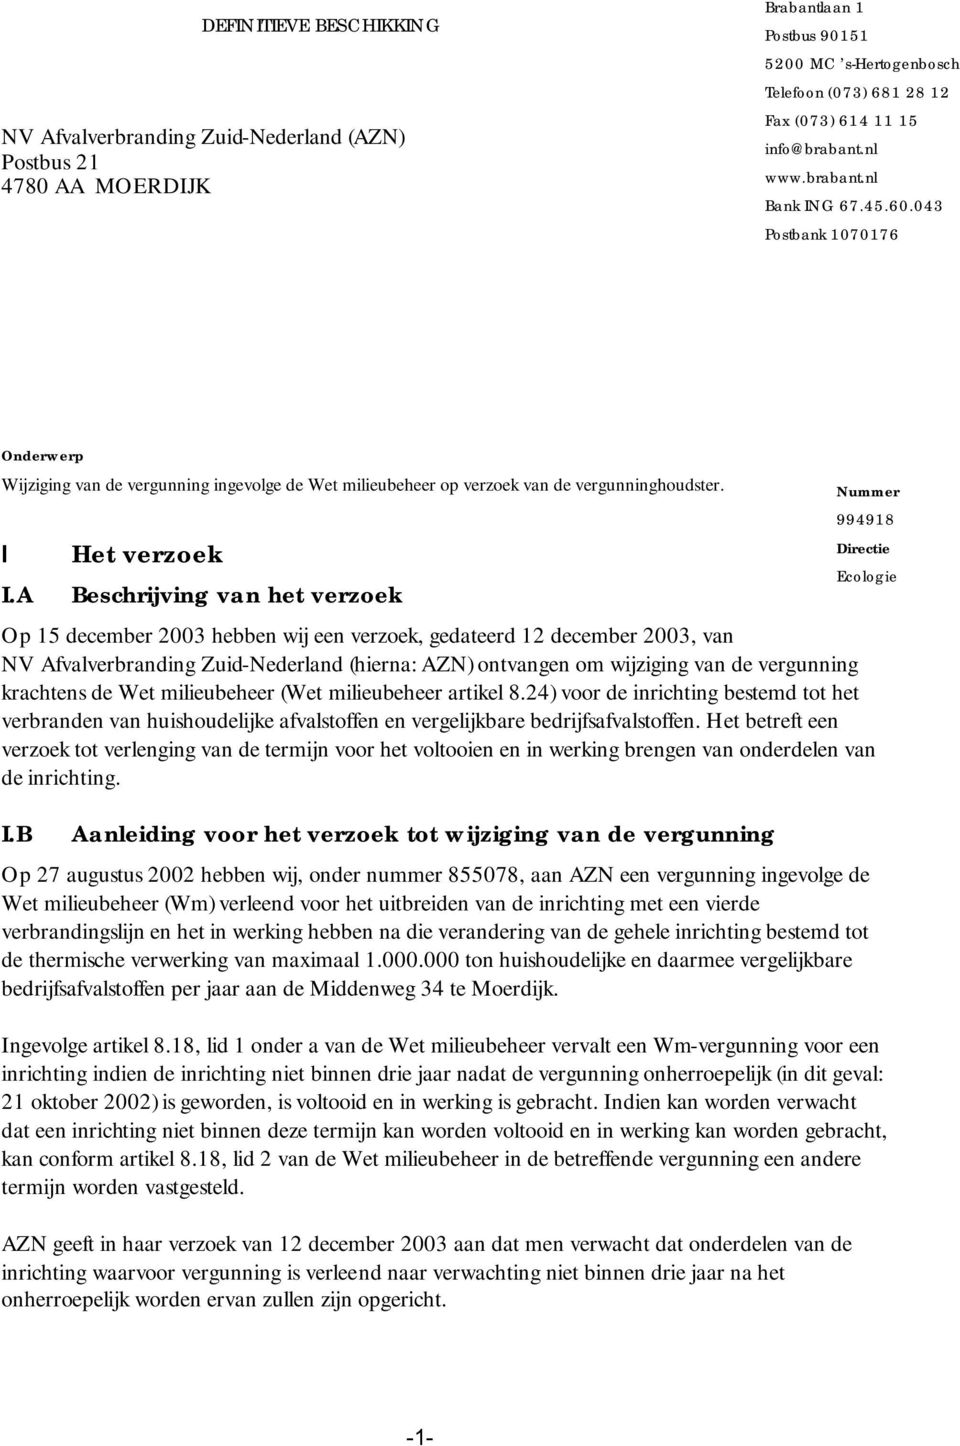 A Het verzoek Beschrijving van het verzoek Op 15 december 2003 hebben wij een verzoek, gedateerd 12 december 2003, van NV Afvalverbranding Zuid-Nederland (hierna: AZN) ontvangen om wijziging van de